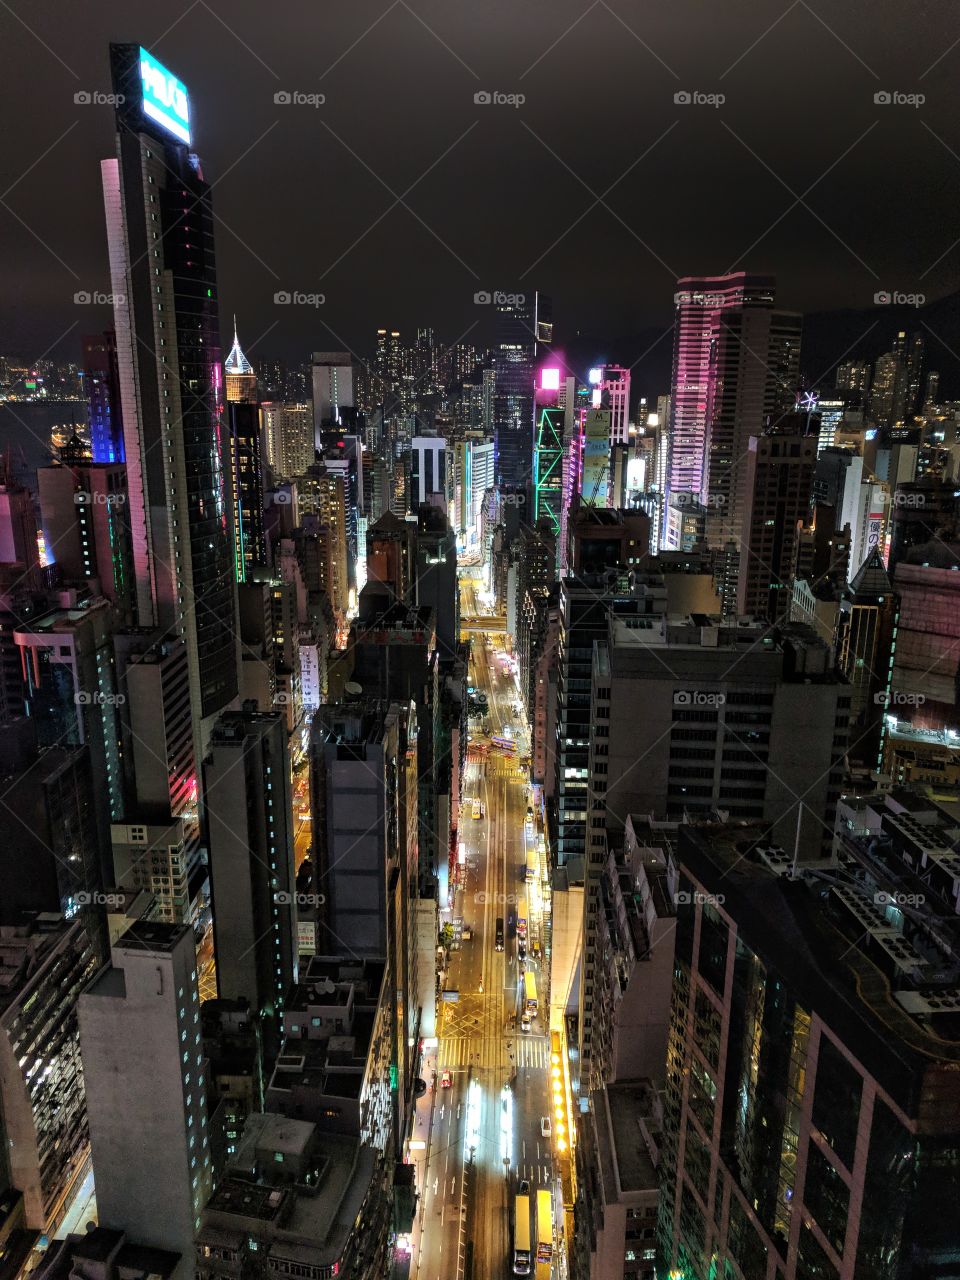 Night lights in Hong